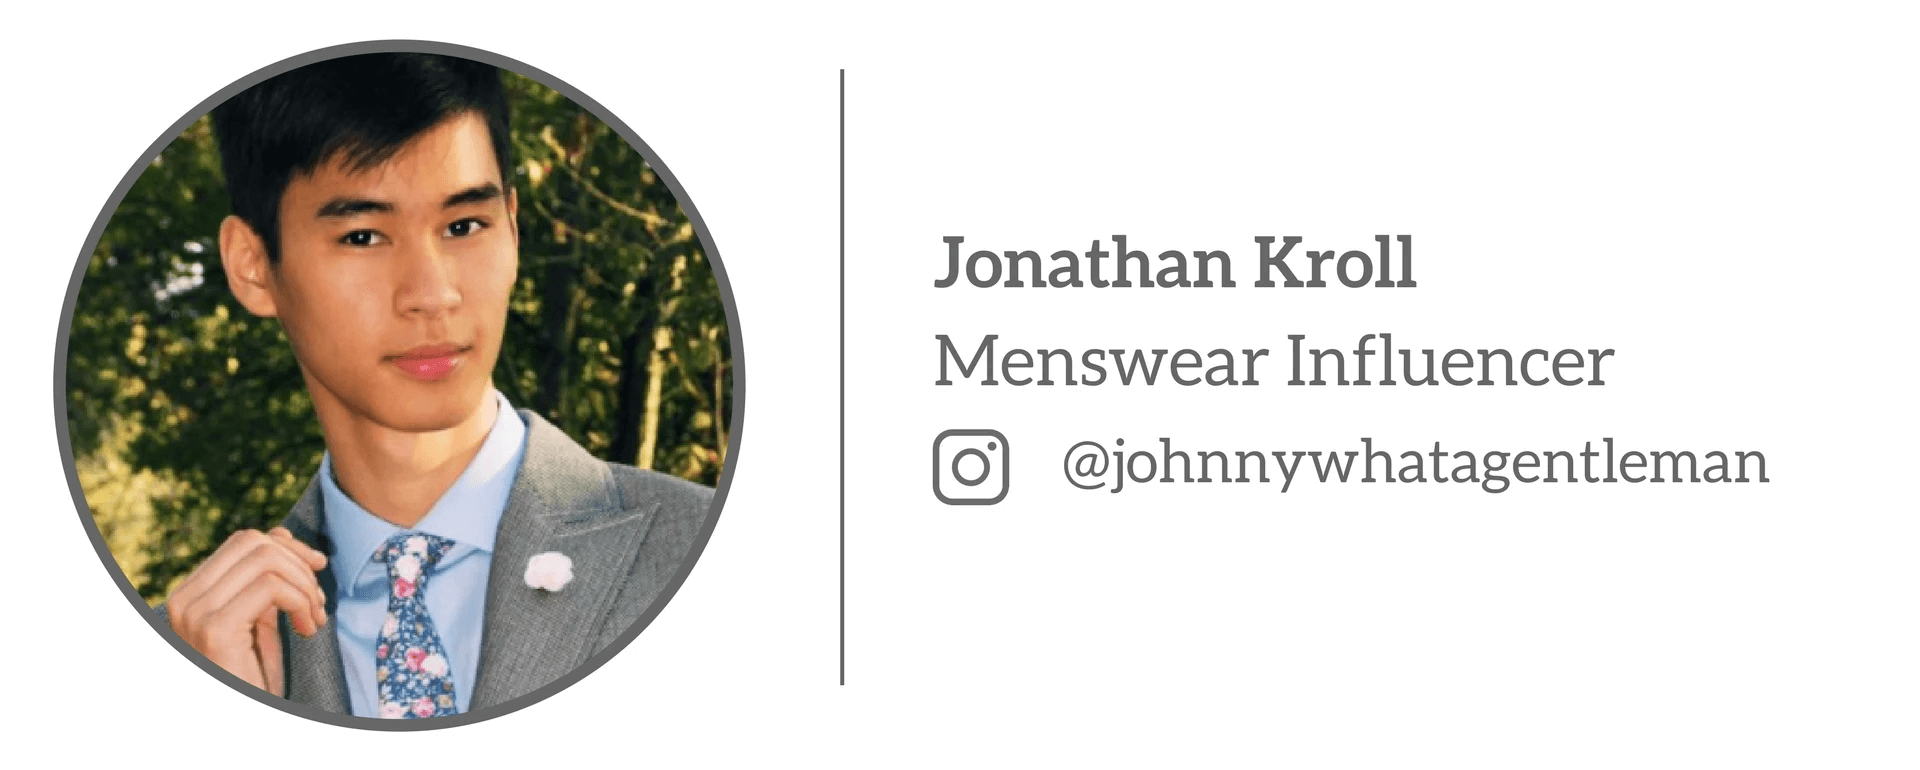 Jonathan Kroll - Menswear Influencer “Các màu sắc”